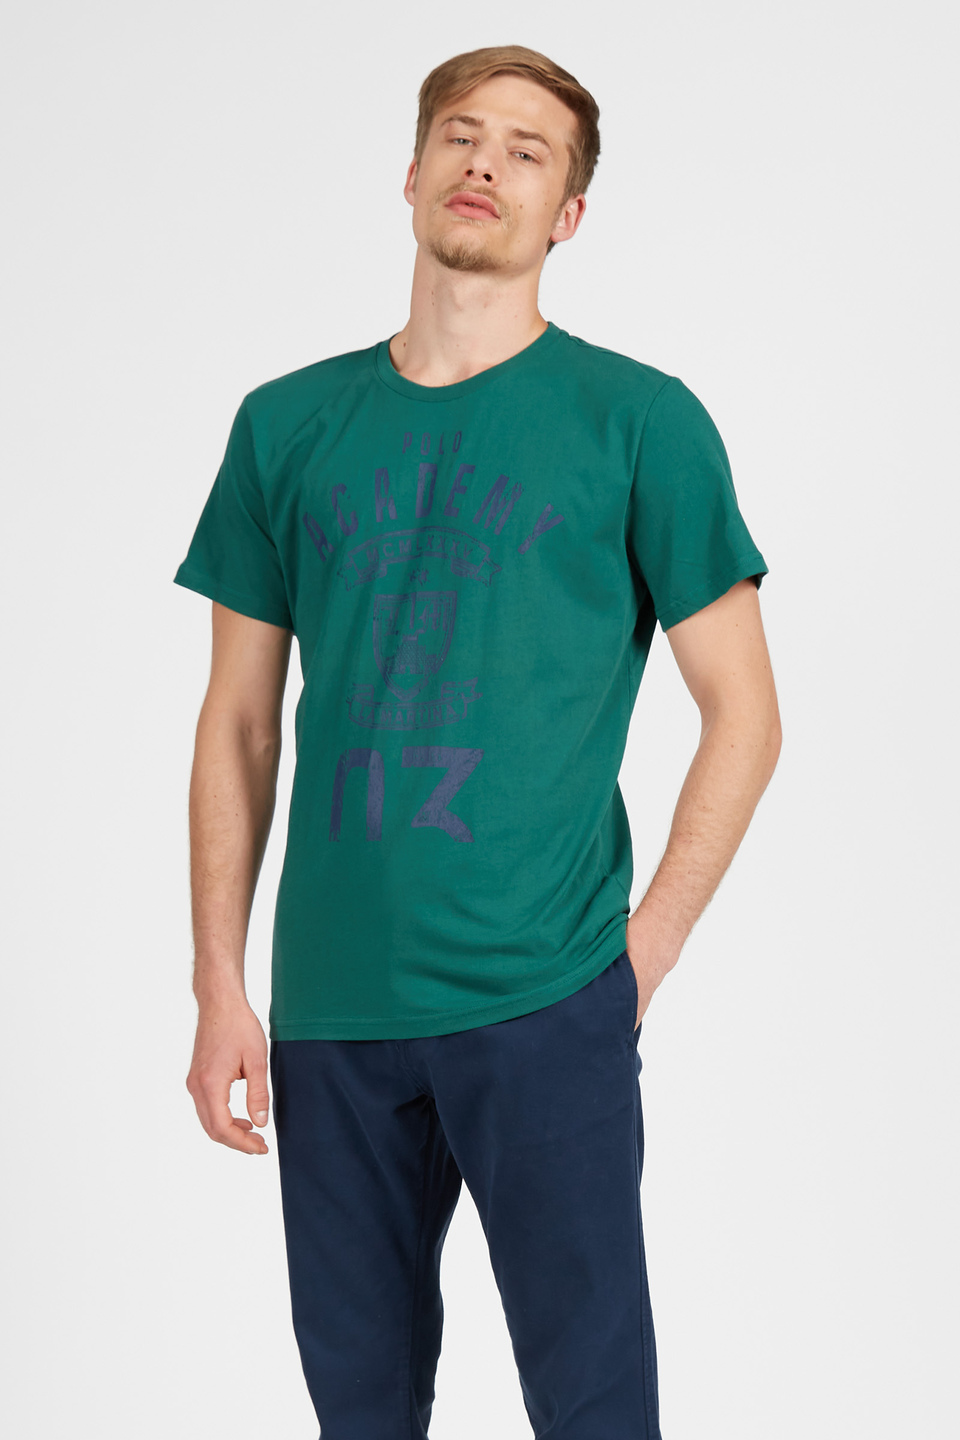 T-shirt da uomo a maniche corte modello girocollo regular fit - La Martina - Official Online Shop